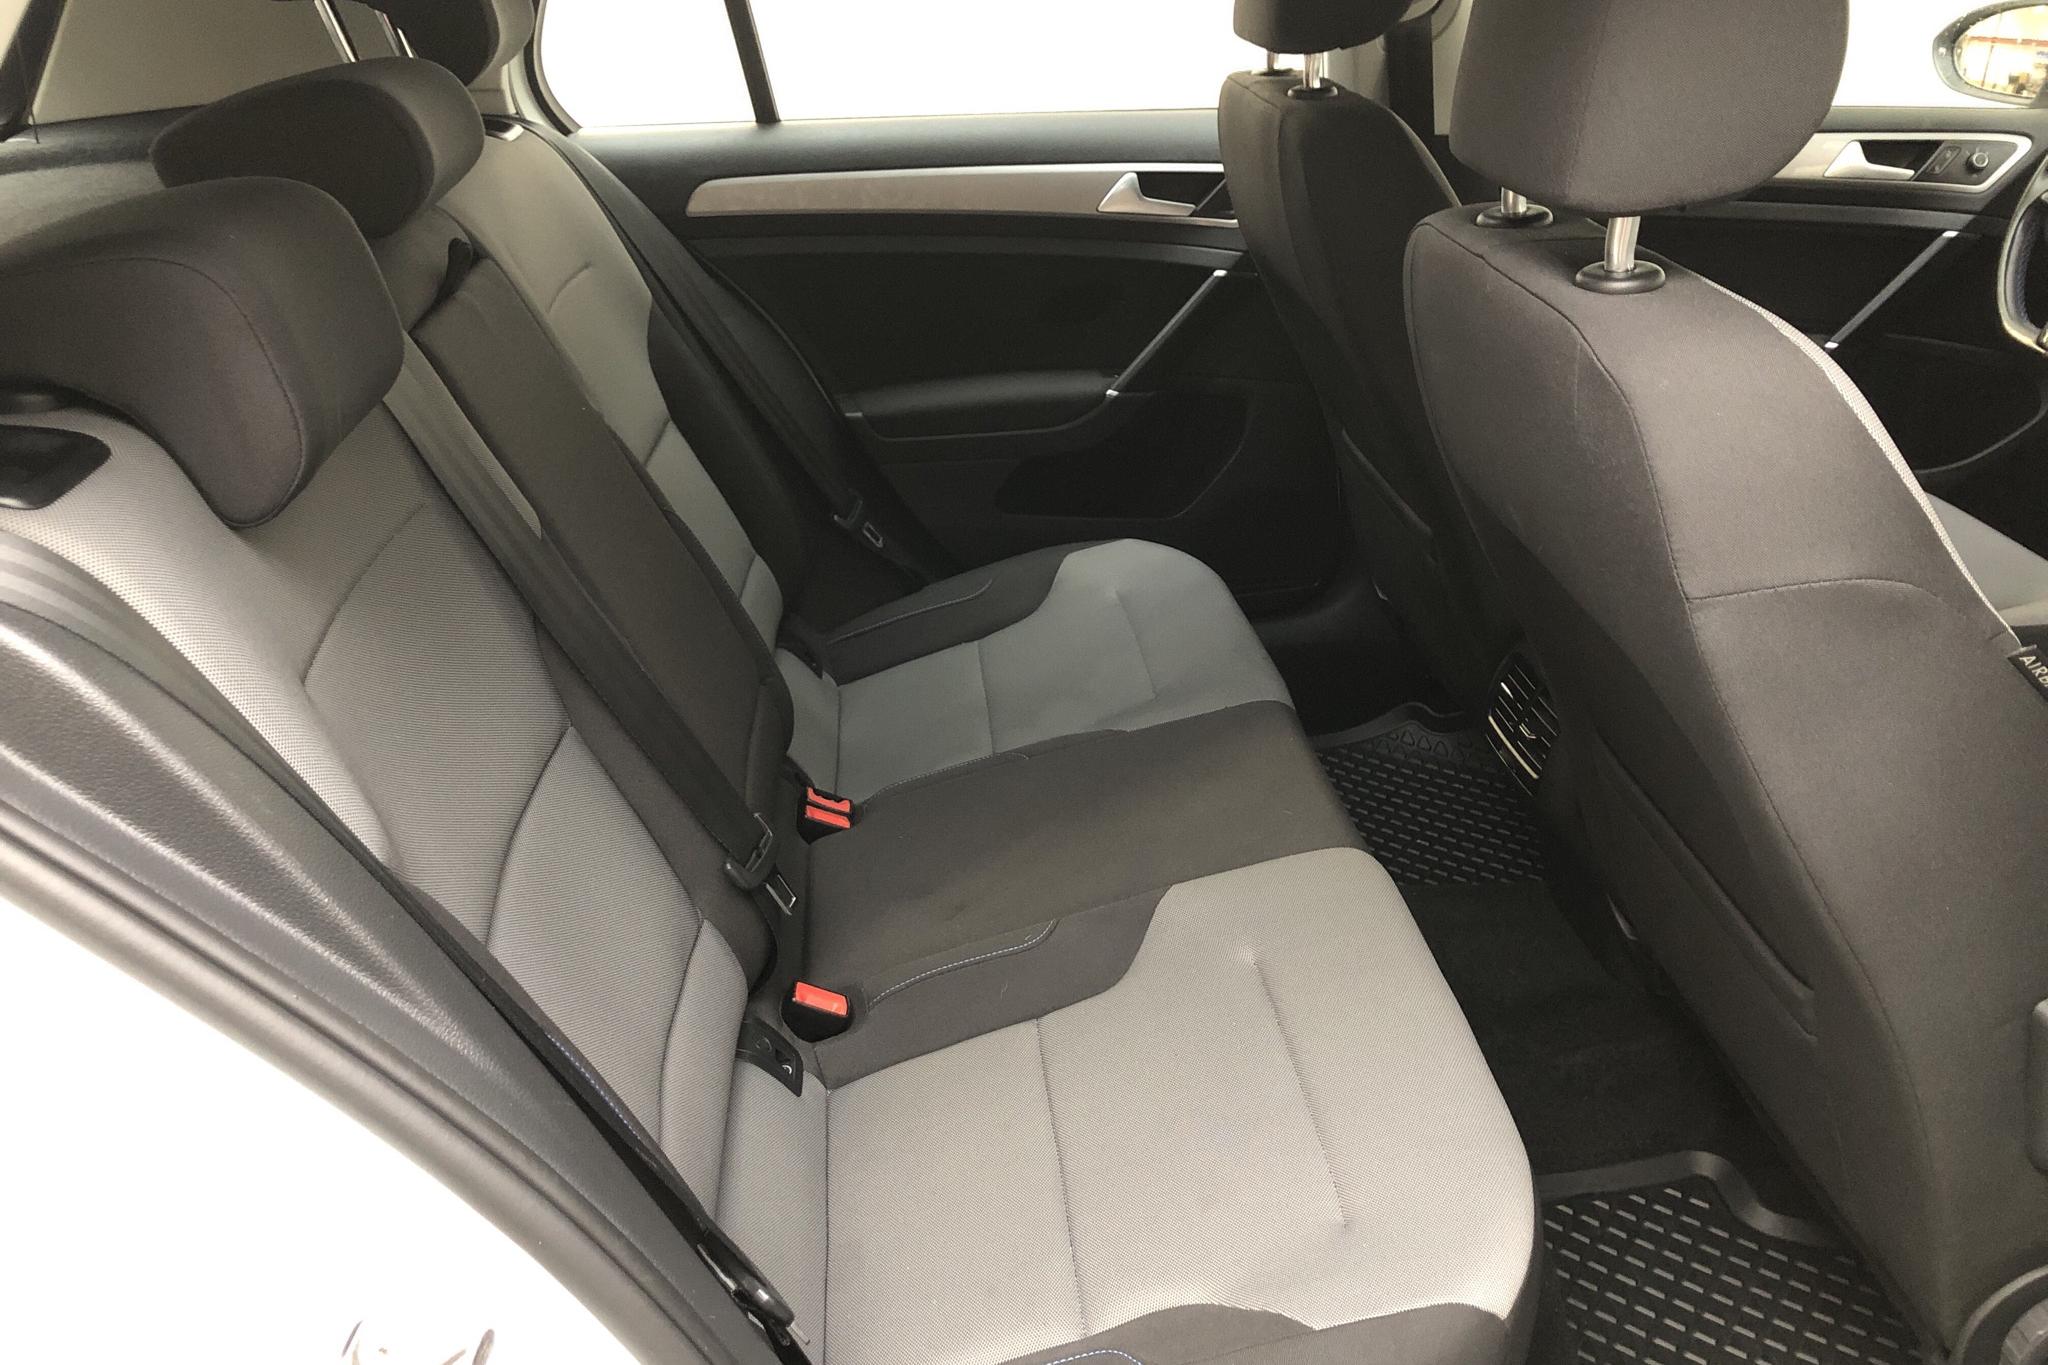 VW e-Golf VII 5dr (115hk) - 2 812 mil - Automat - vit - 2017